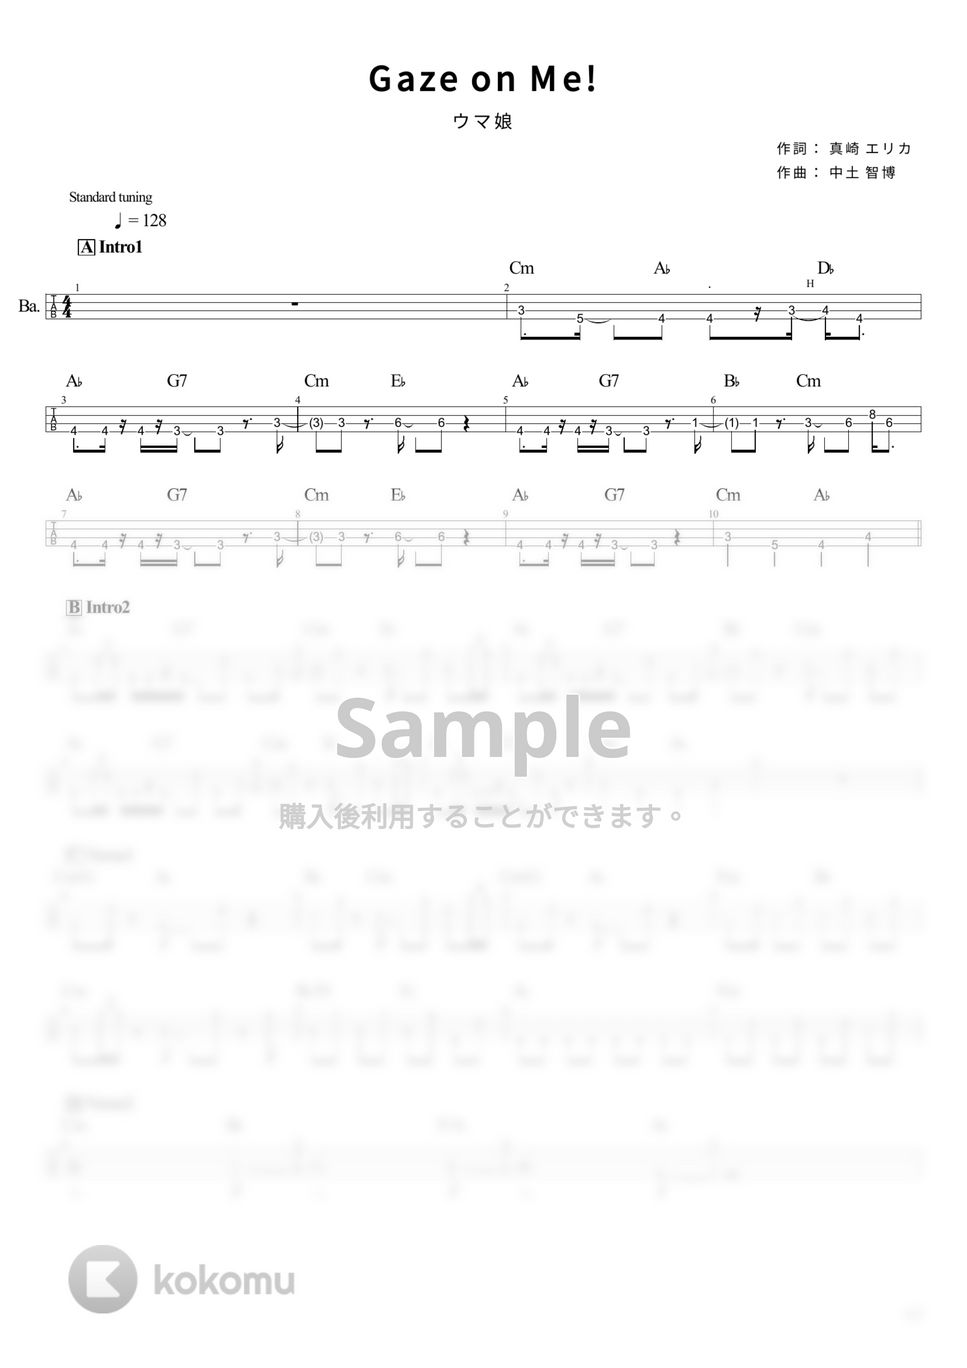 ウマ娘 - Gaze on Me!  (Game size) (Tabのみ/ベース Tab譜 4弦) by T's bass score